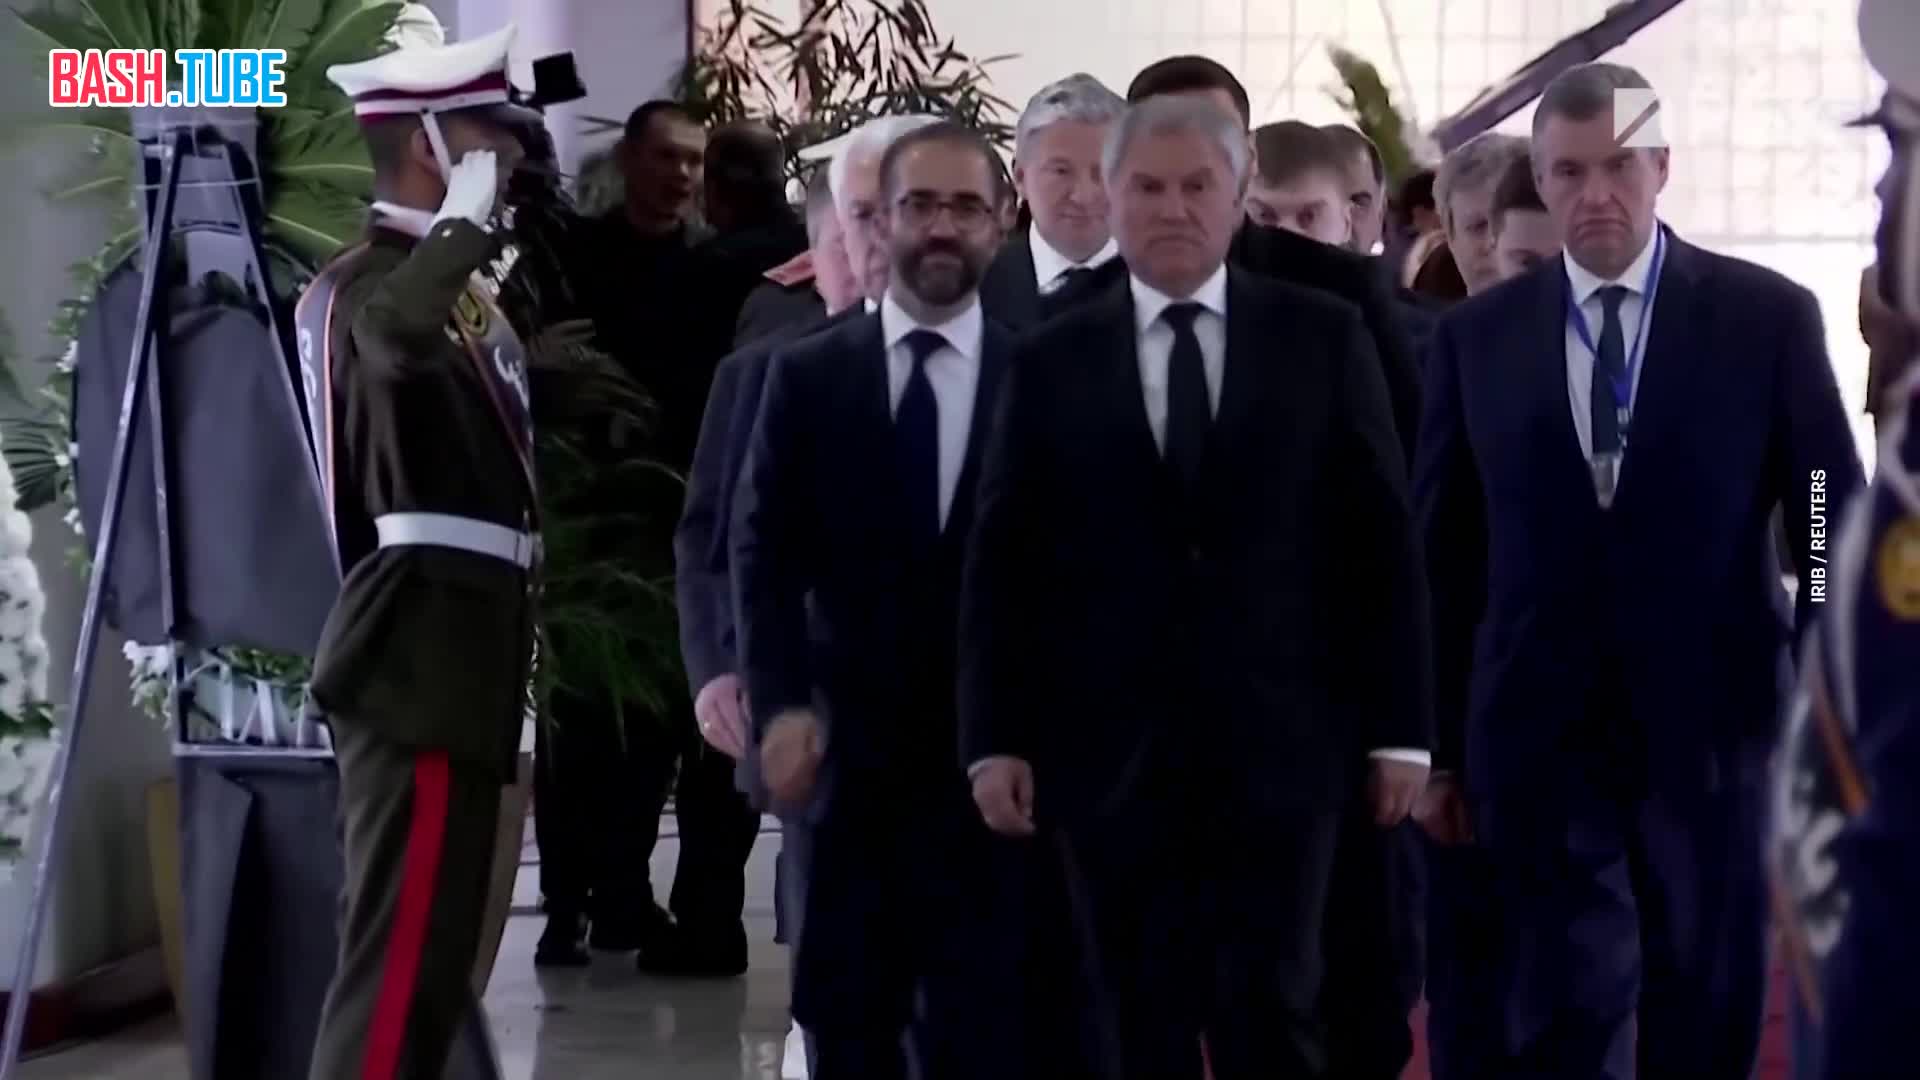  Появились кадры с Вячеславом Володиным, который в Тегеране участвует в церемонии похорон президента Эбрахима Раиси